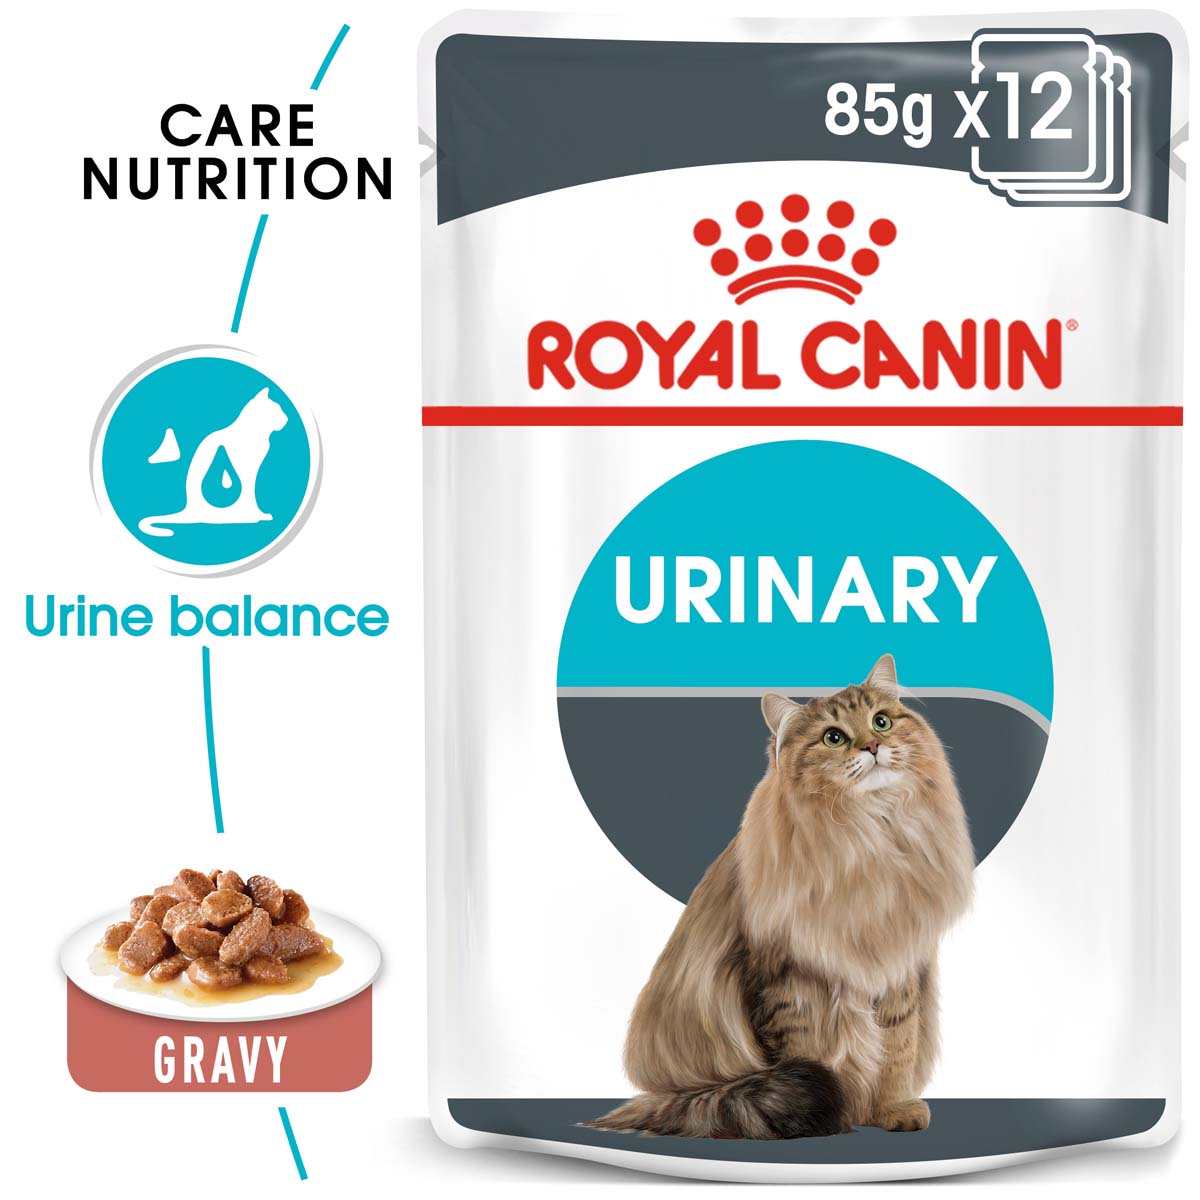 ROYAL CANIN Urinary Care pro zdravé močové cesty